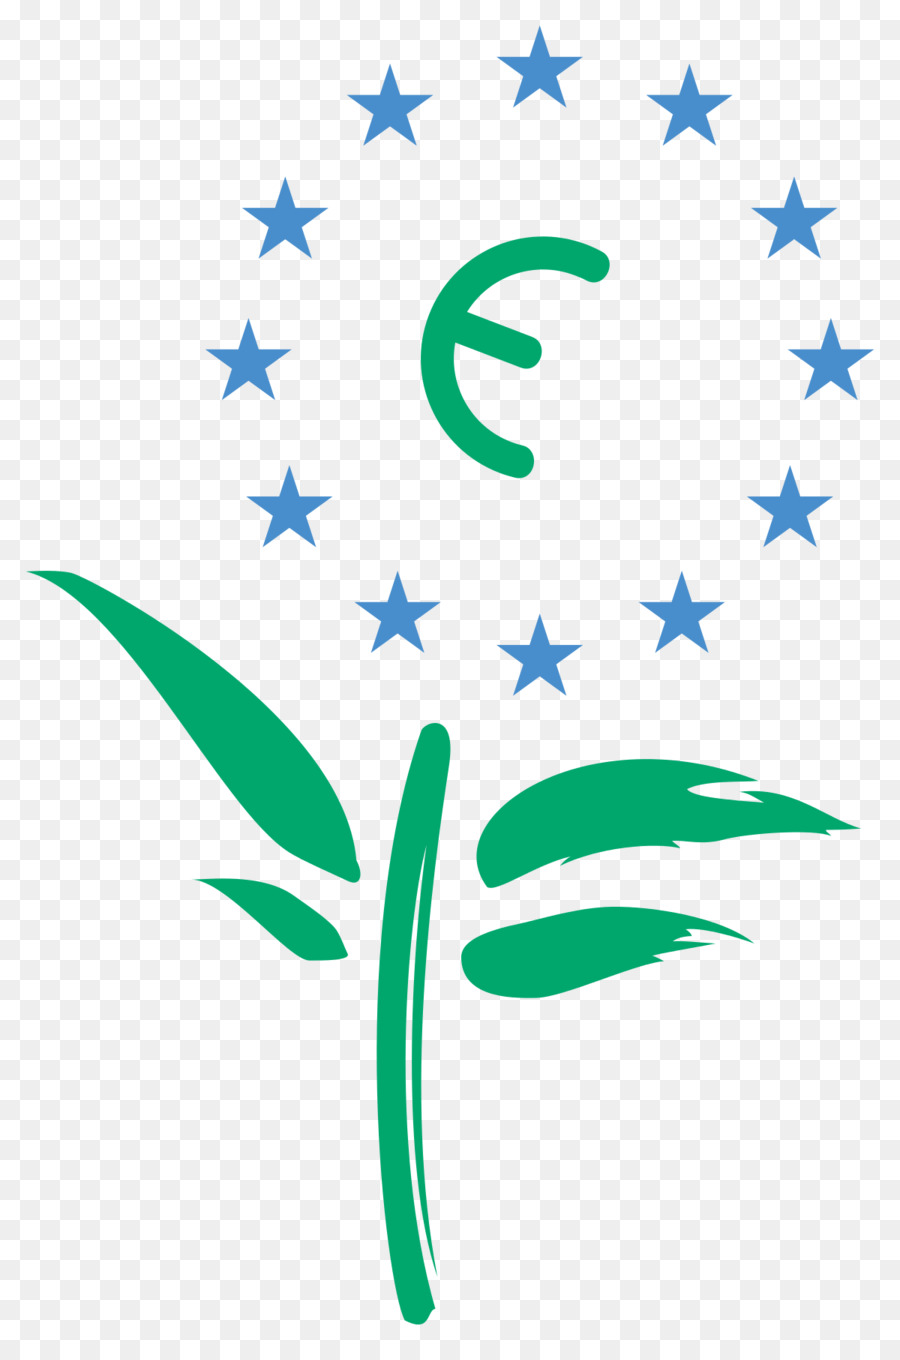 Dell'Unione europea per il marchio Ecolabel UE - Ambiente naturale